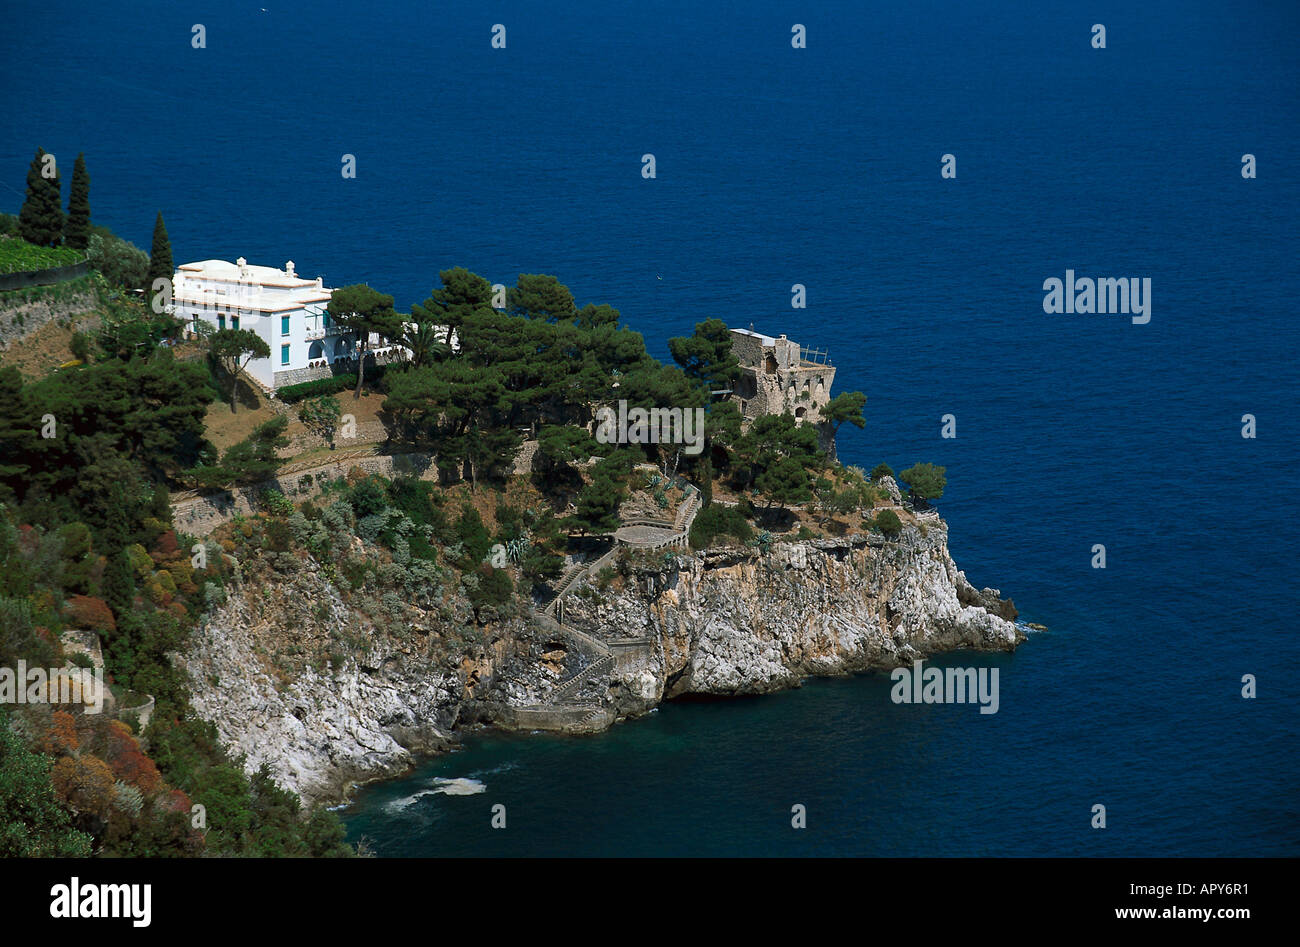 Près de la côte amalfitaine, Positano, Campanie Italie Banque D'Images